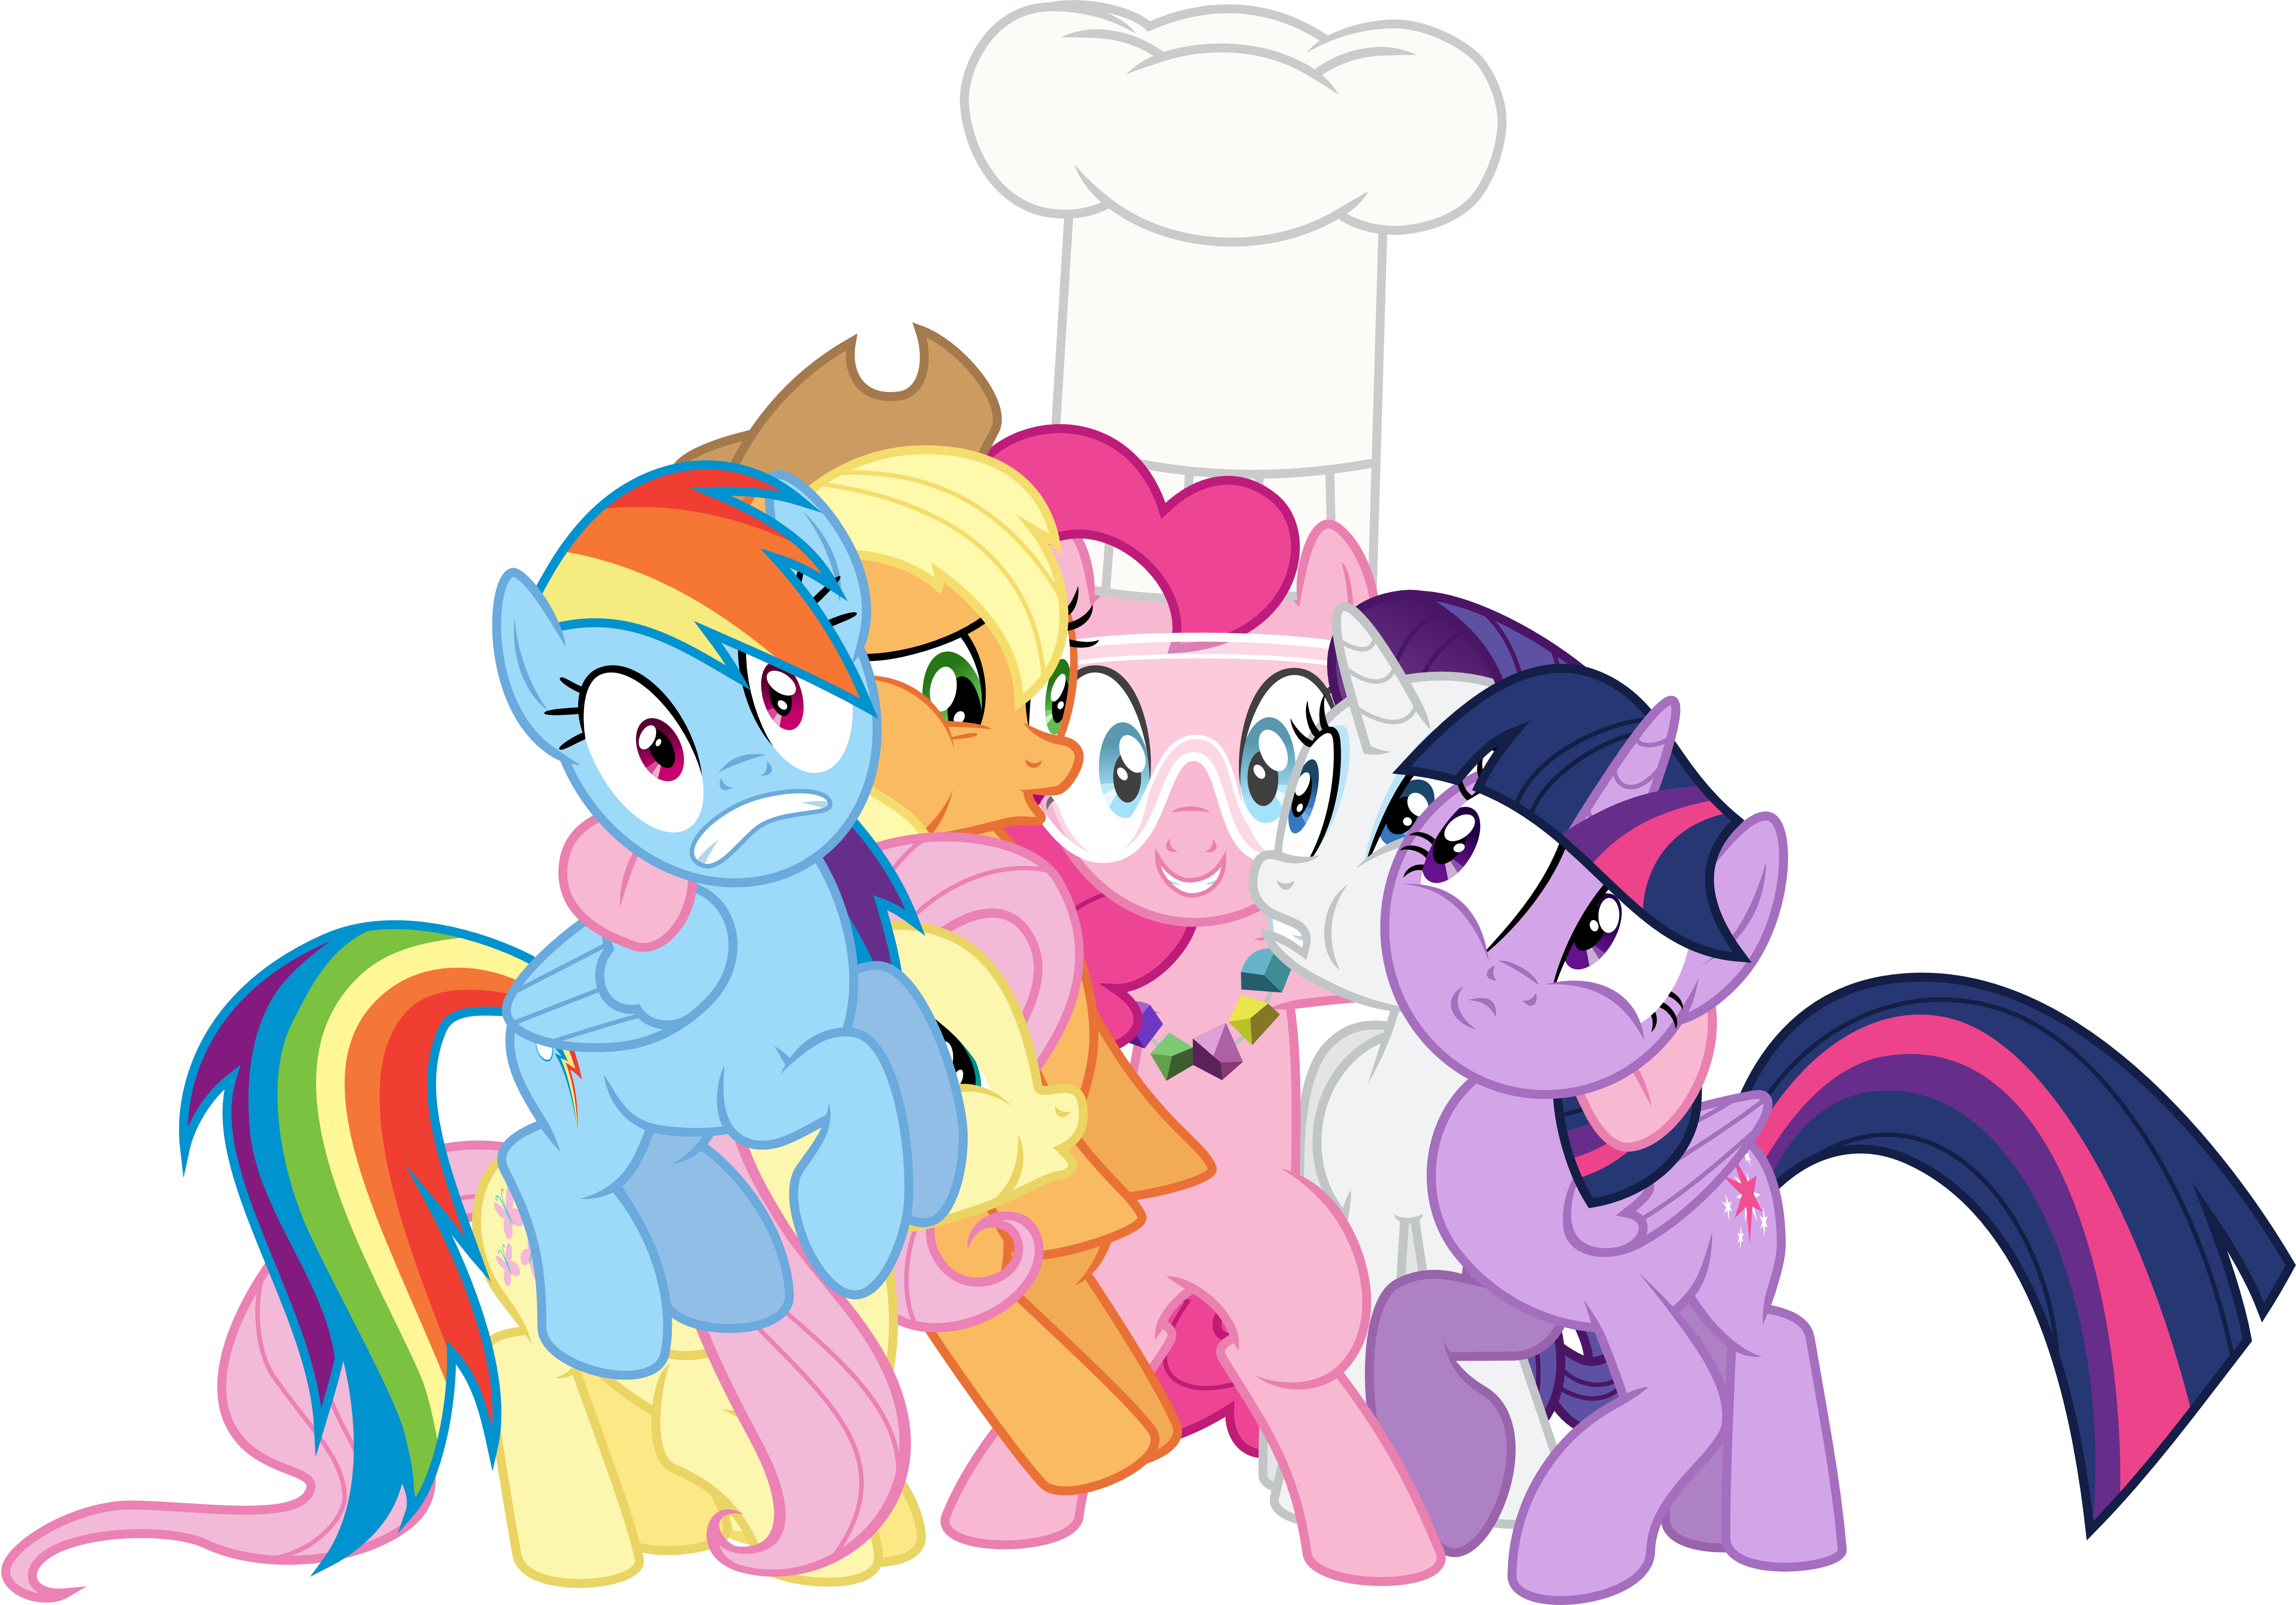 Mane Six Awkward Group Hug By Jeatz-axl - My Little Pony: Friendship Is Magic (5721x4000)